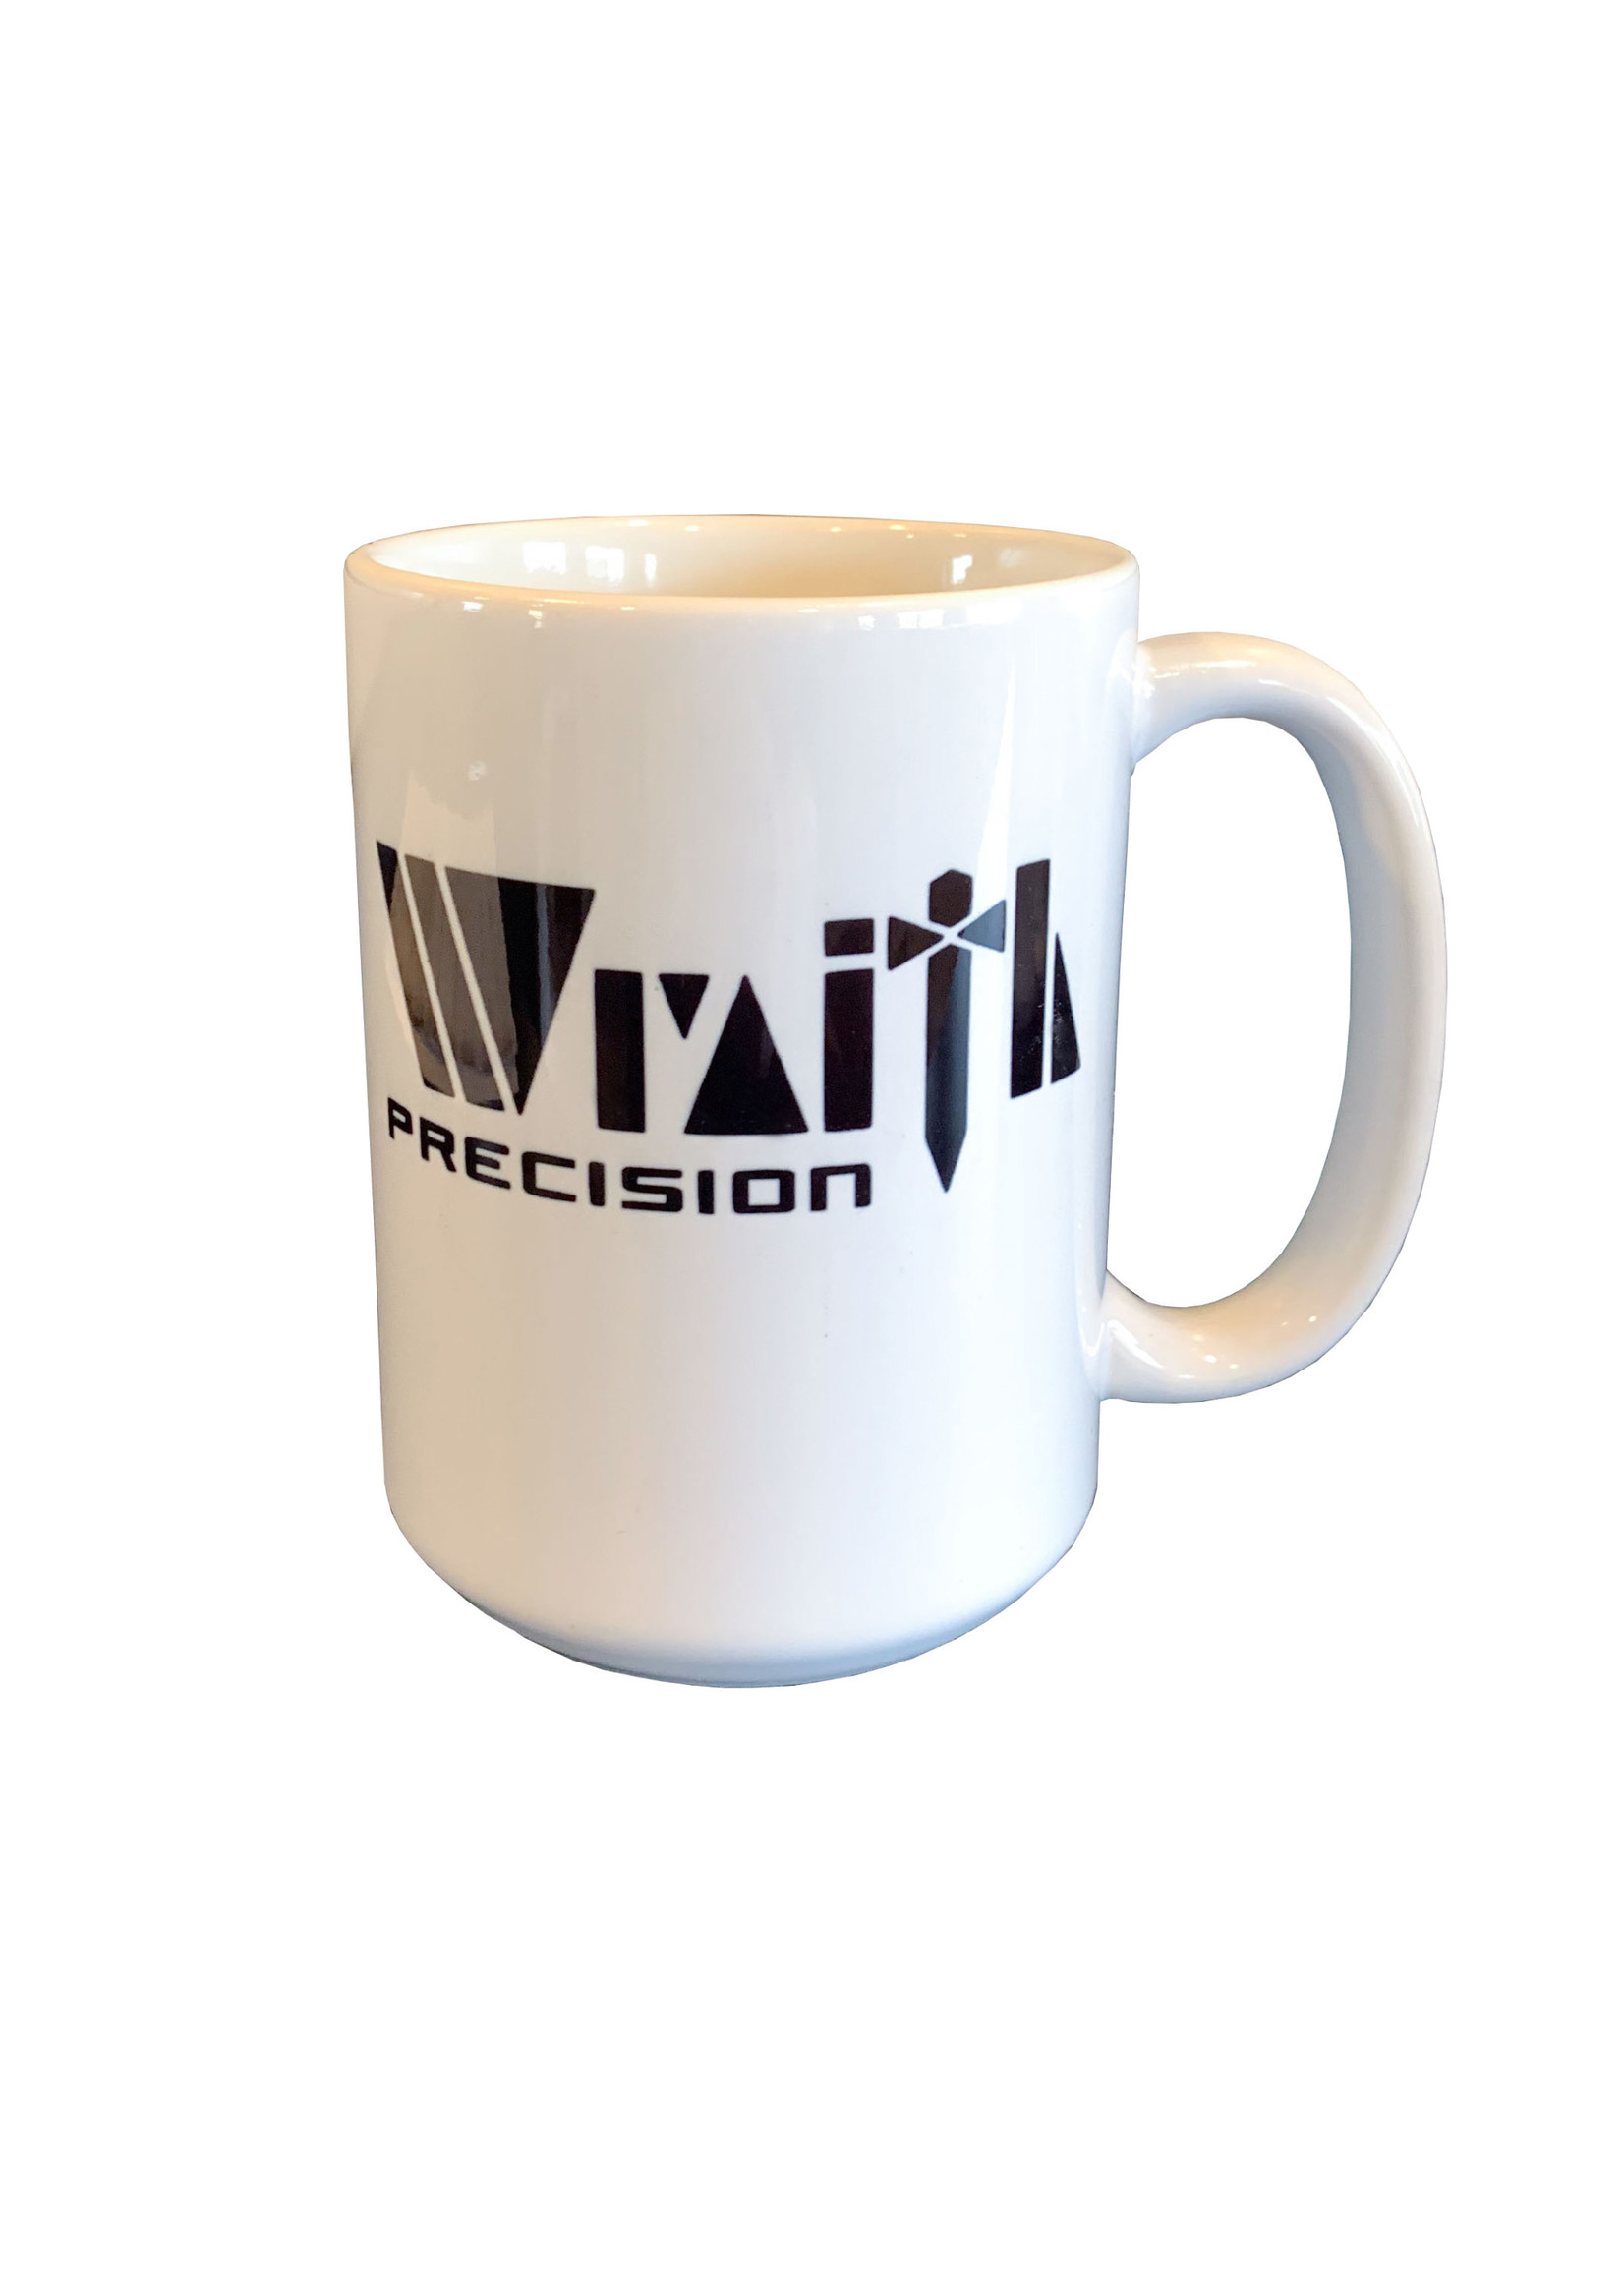 Wraith Precision Wraith Precision Mug, 15 oz.